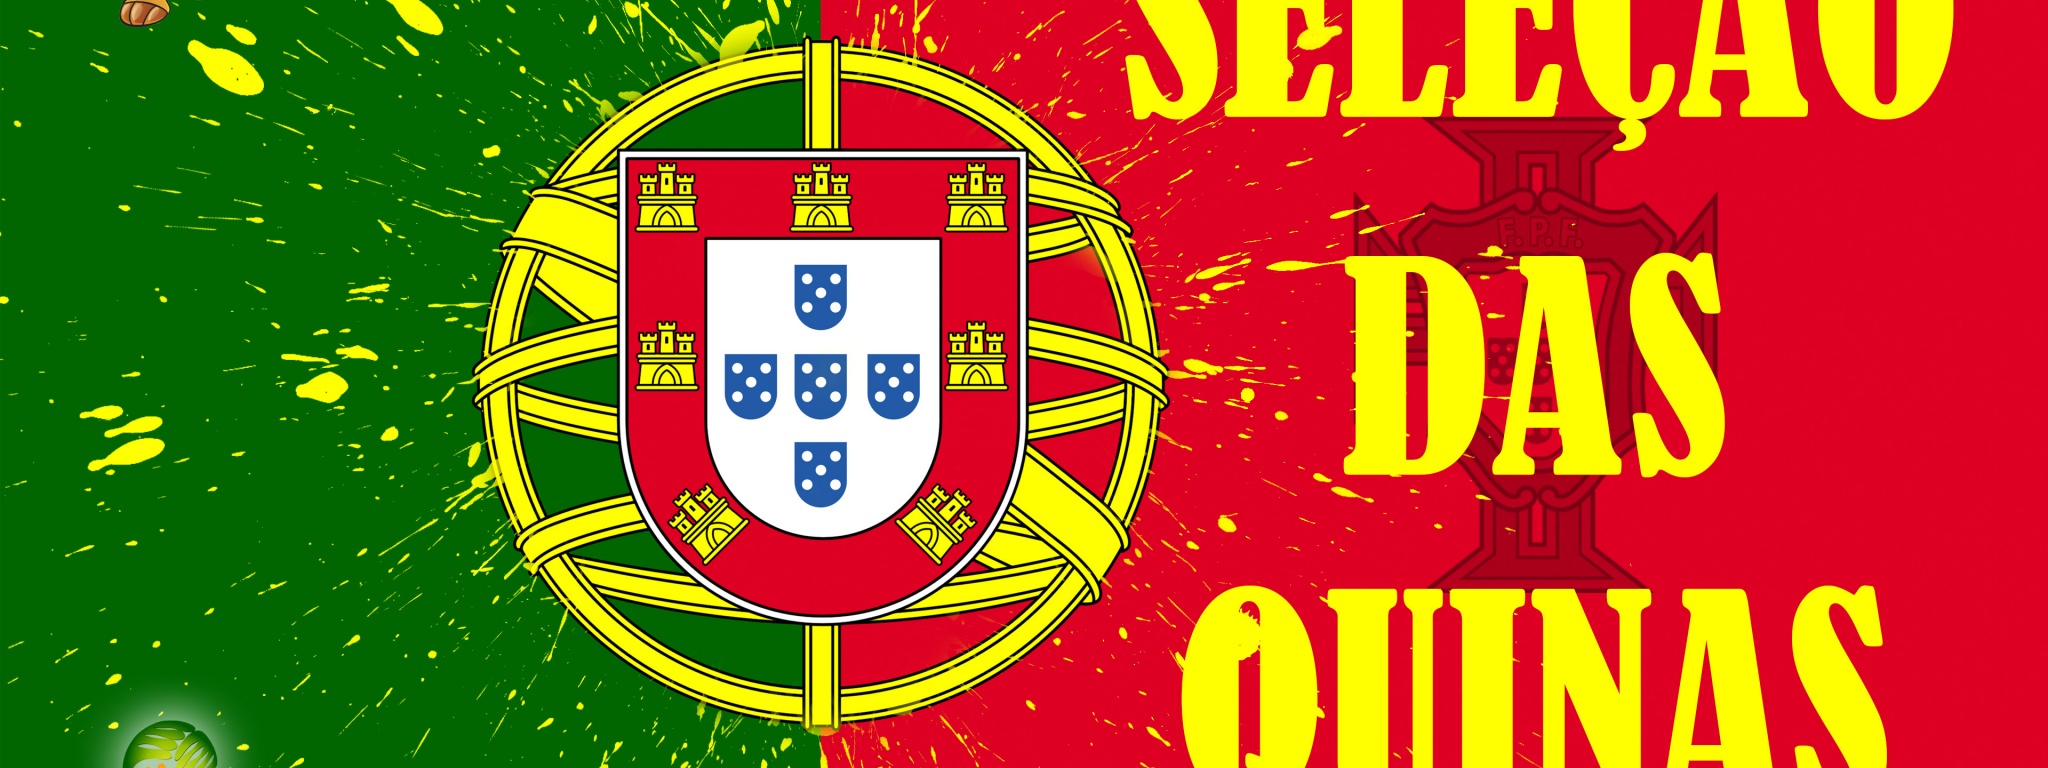 Selecao Das Quinas Portugal Football Logo